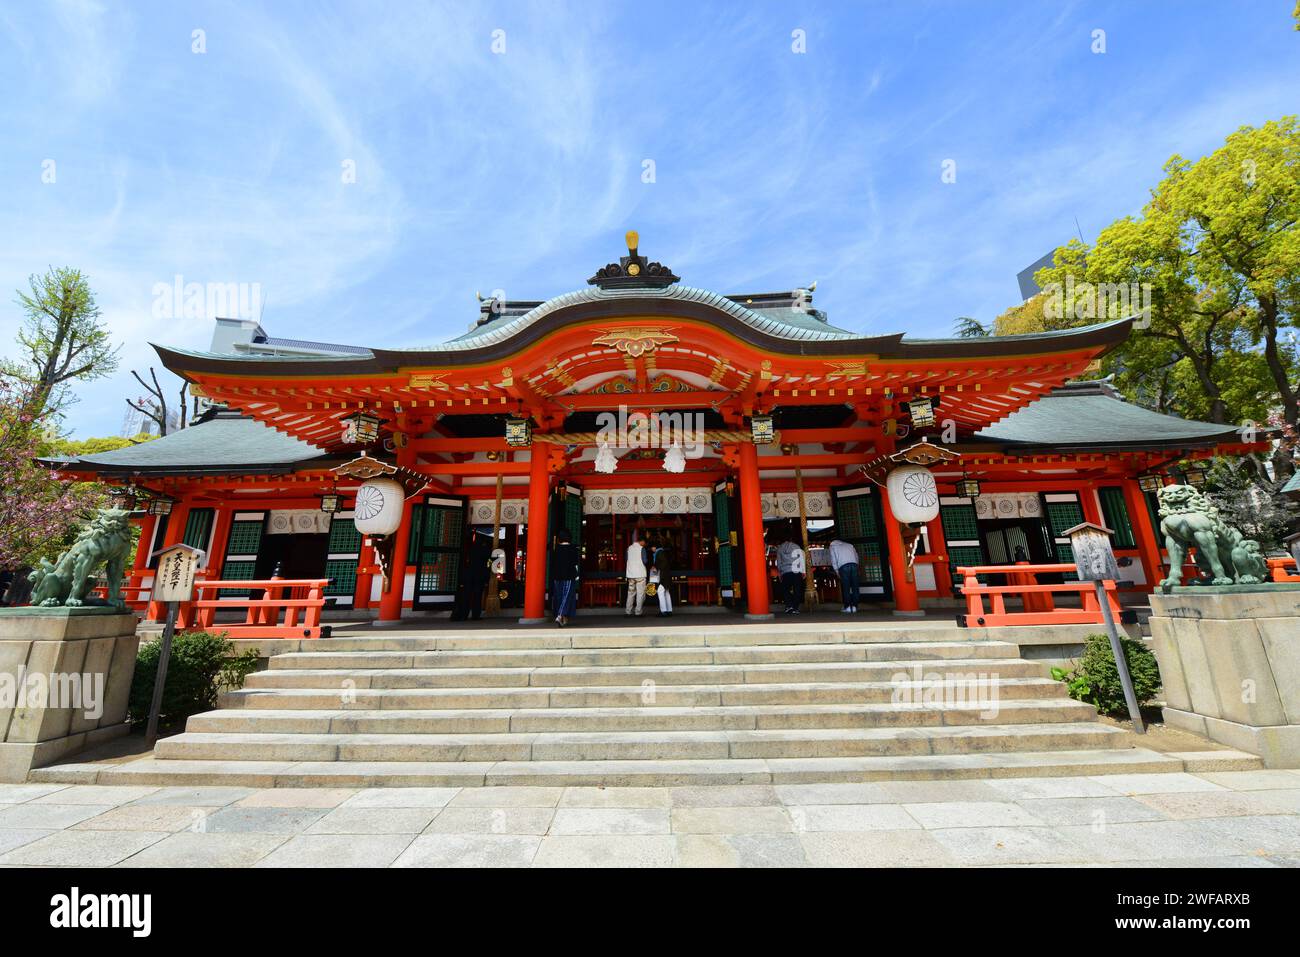 The Ikuta Shrine in Kobe, Japan. Stock Photo